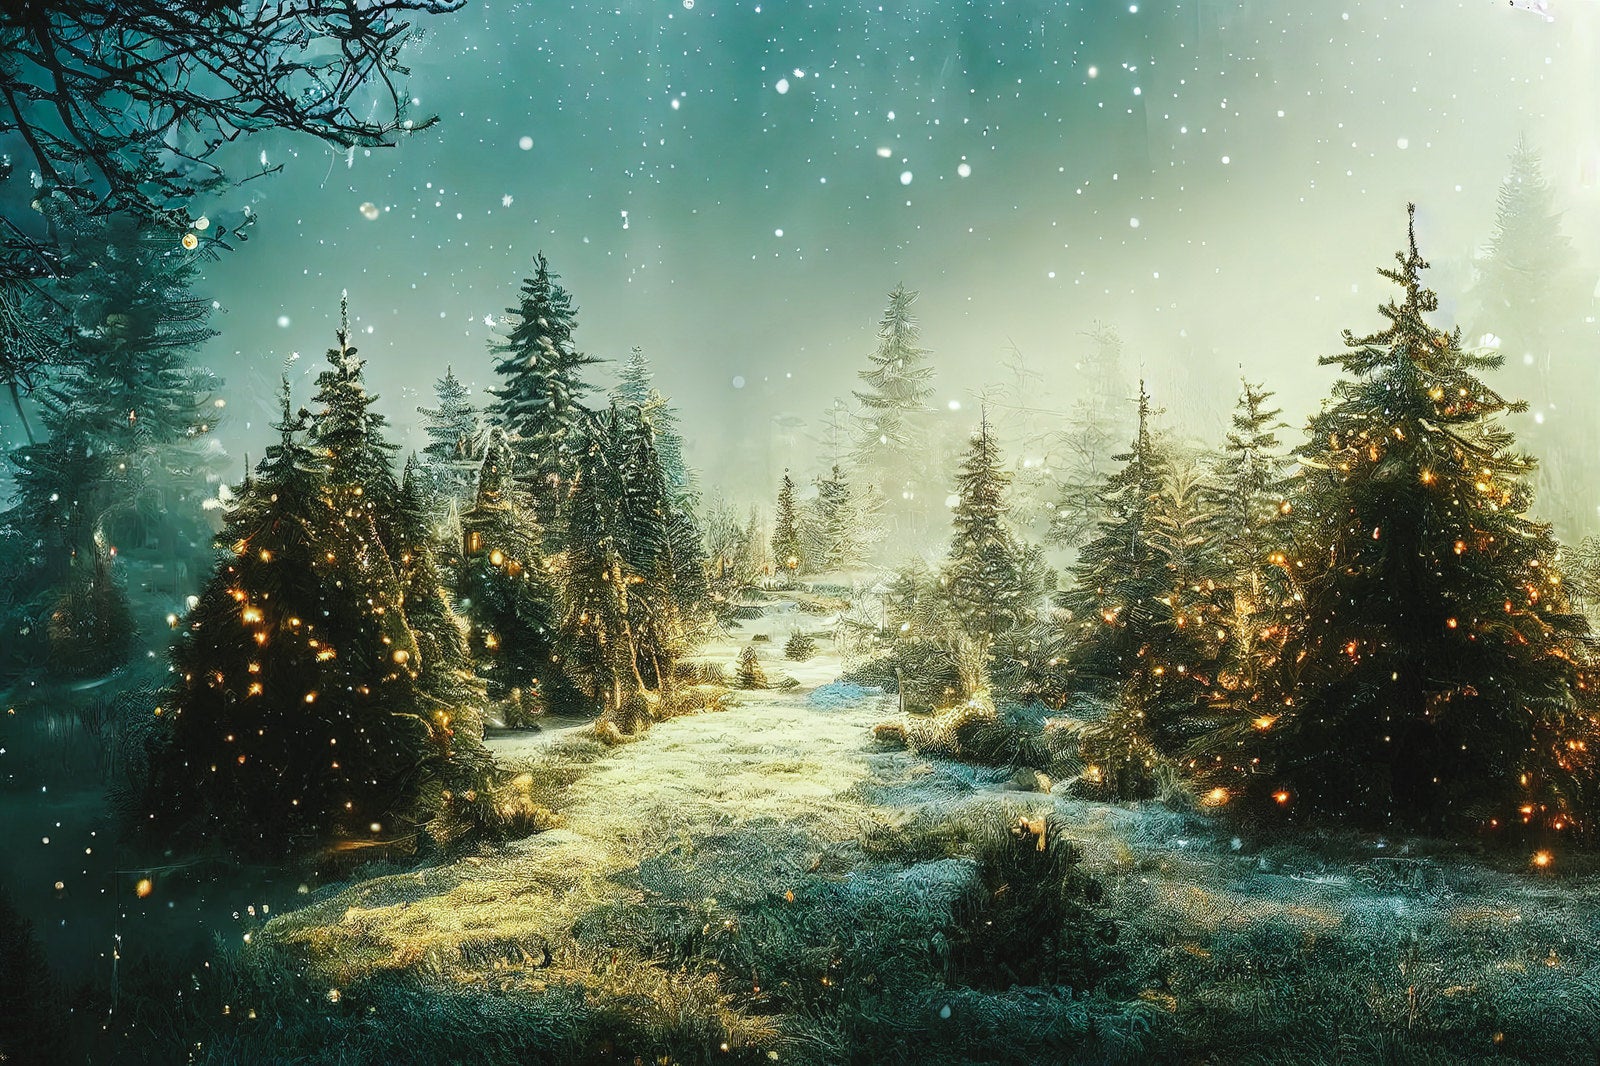 「煌めく光が舞う雪の森」の写真